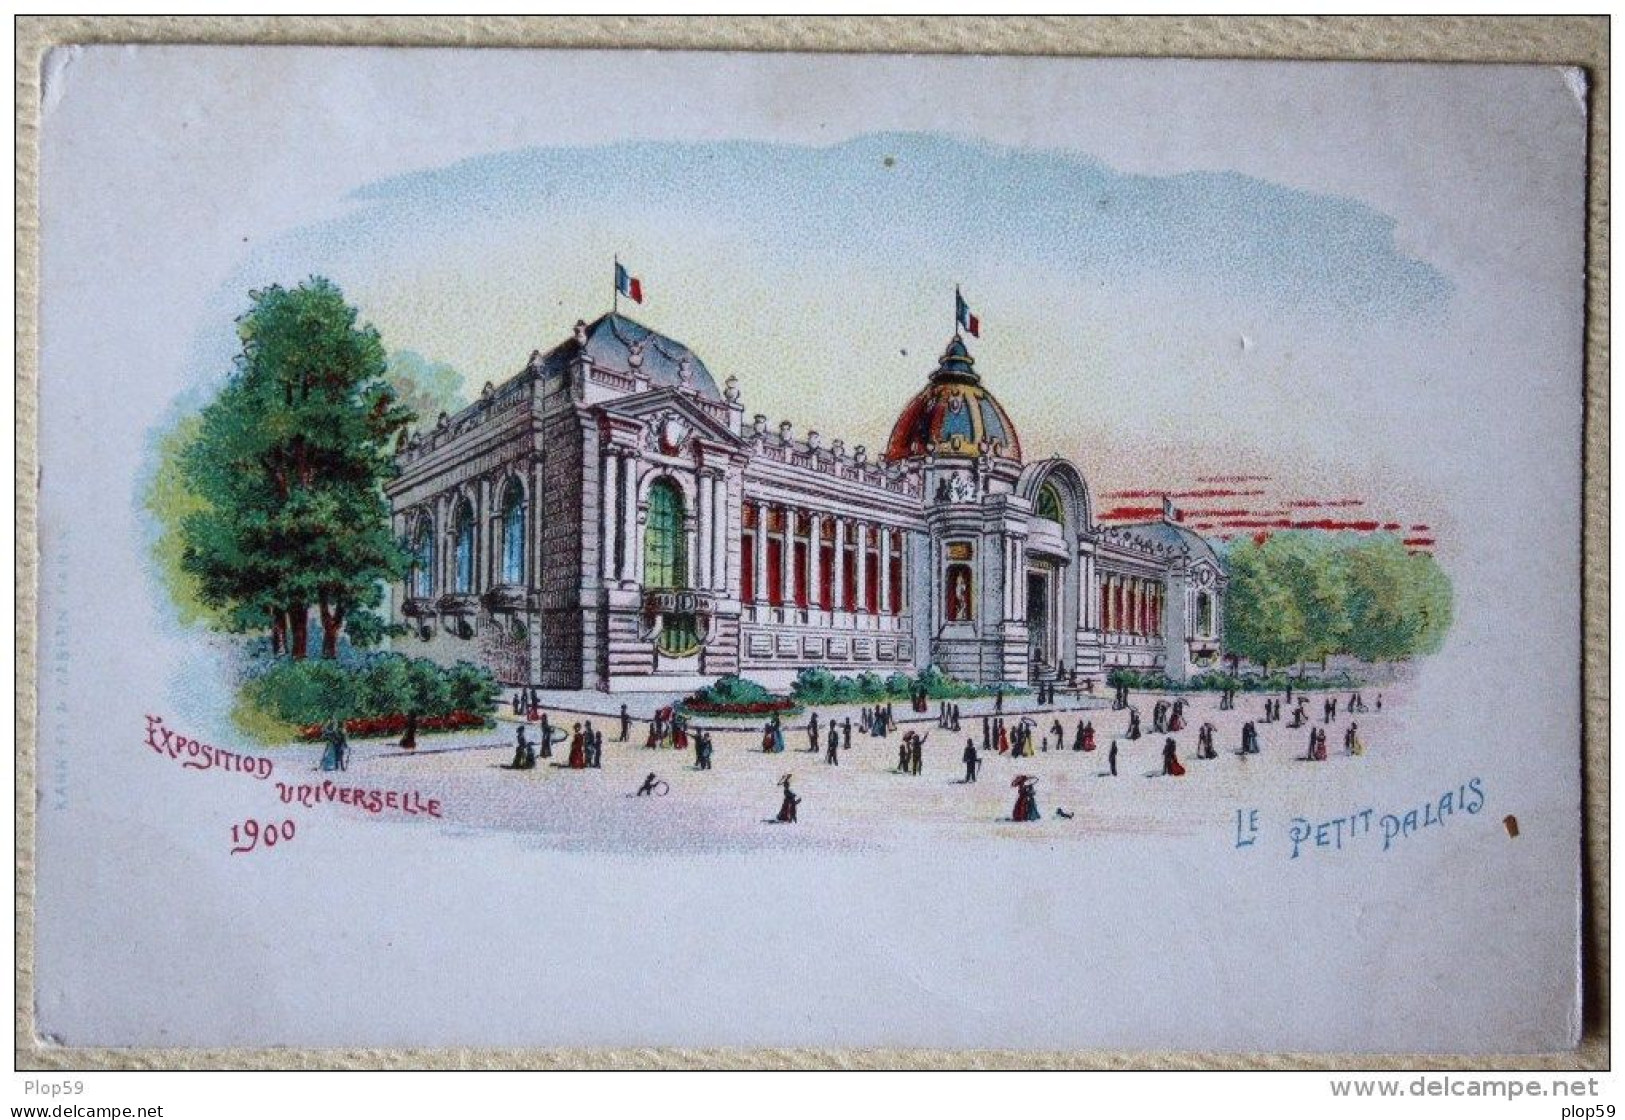 Cpa Ak Pk Champagne Mercier /exposition Universelle De 1900 Le Petit Palais - Pubblicitari